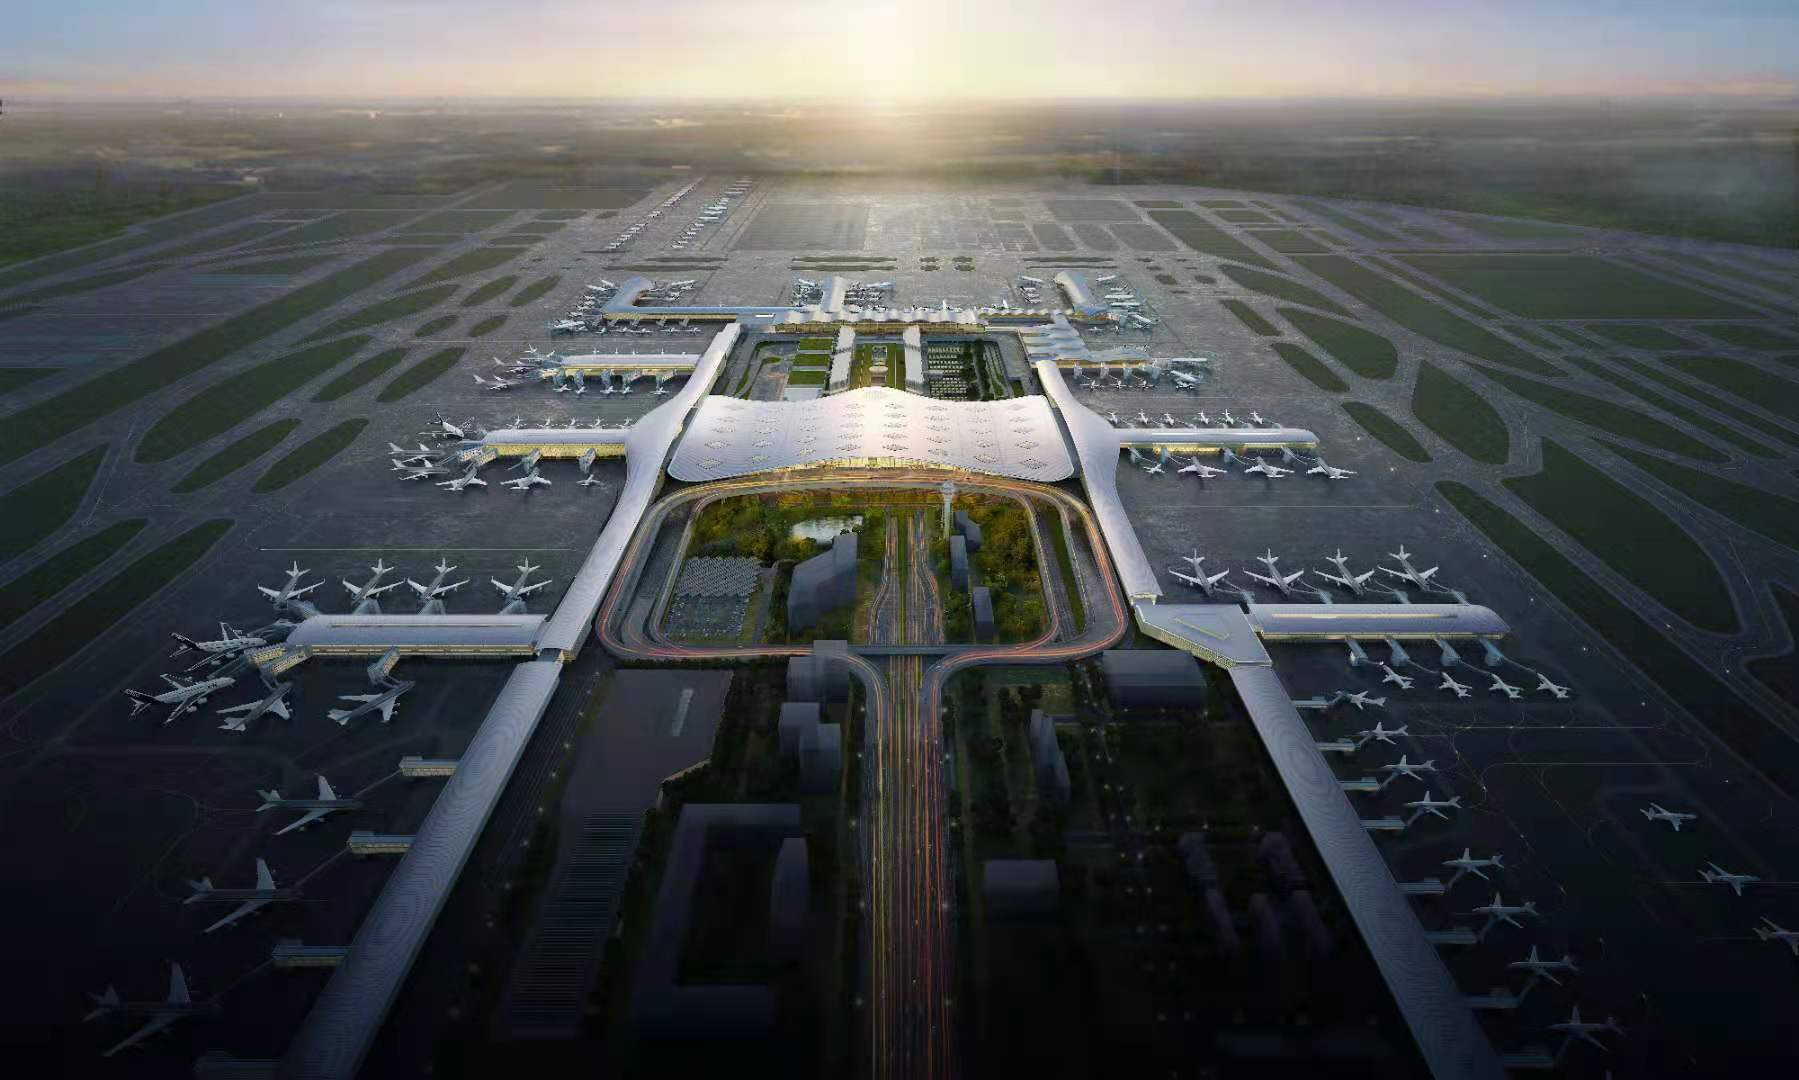 据项目规划,未来四个航站楼全部投入使用后,萧山机场年旅客吞吐量将